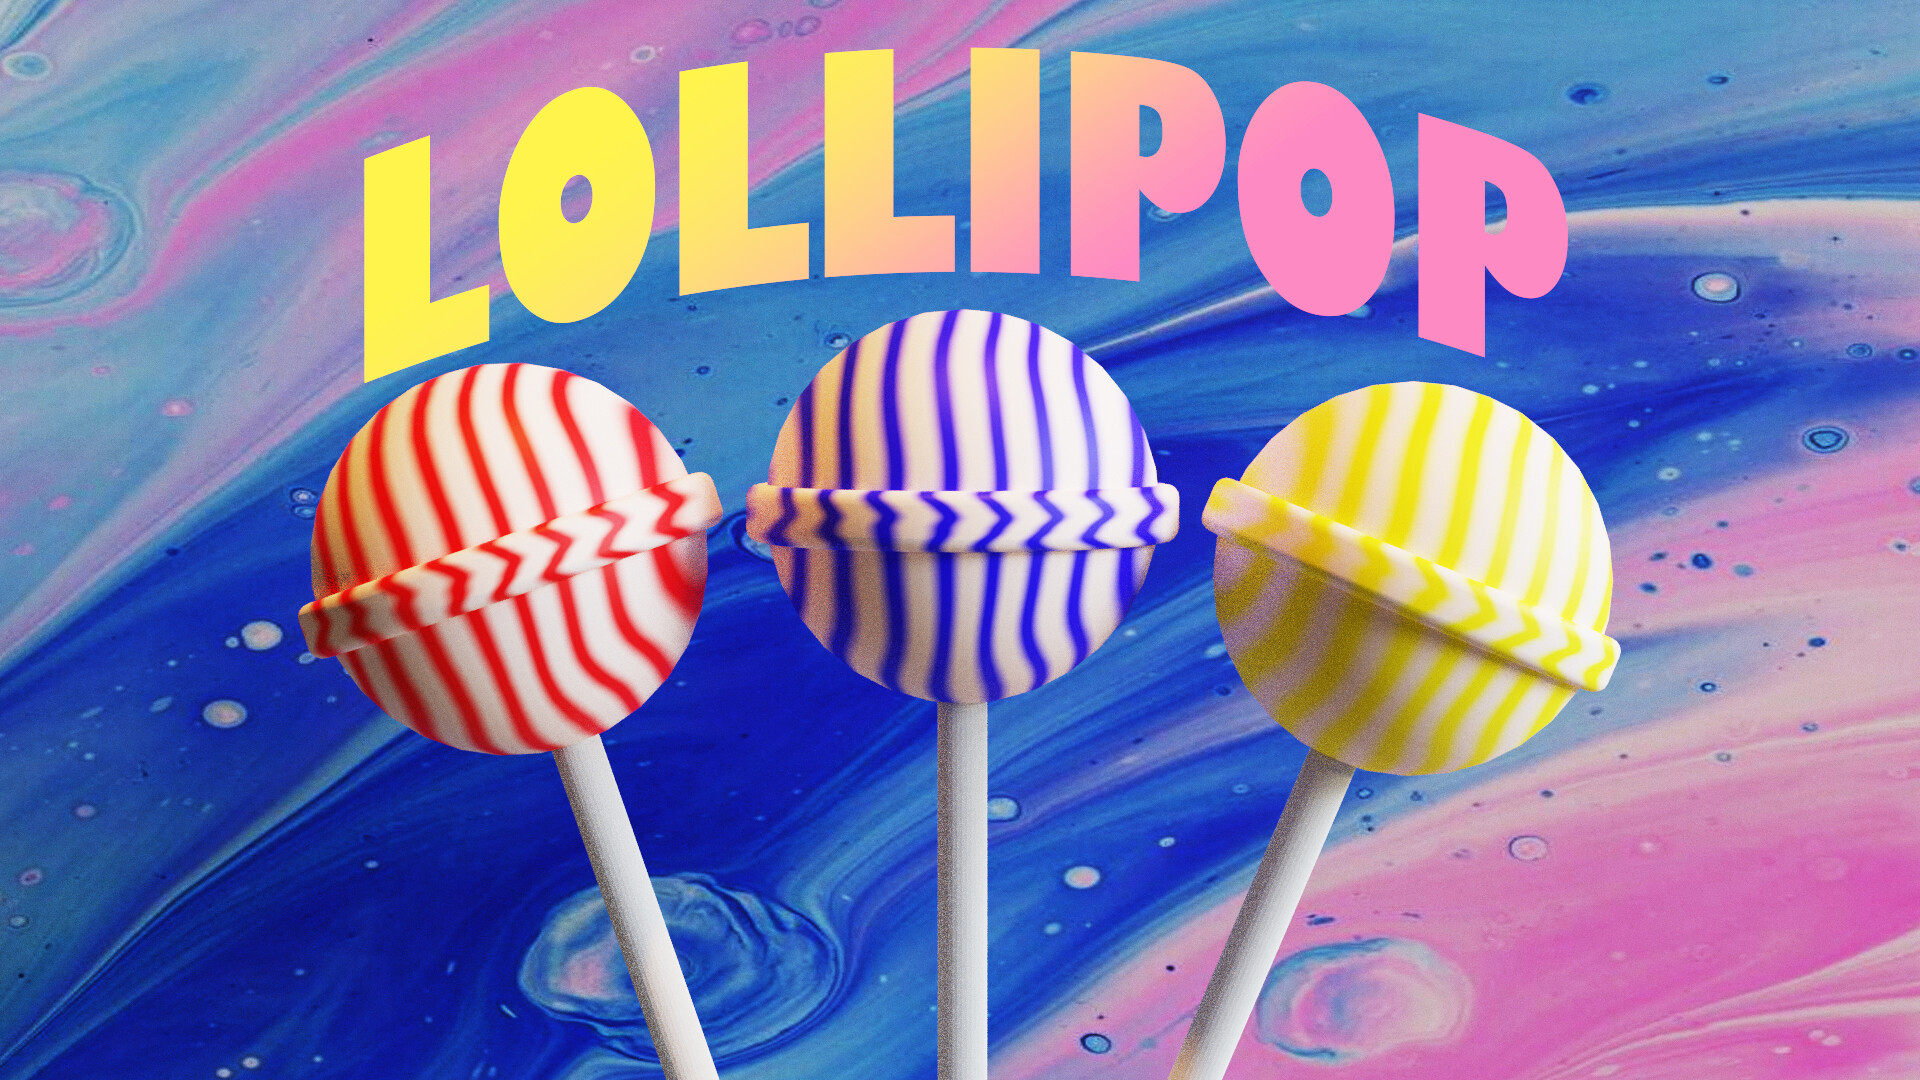 ArtStation - Lollipop